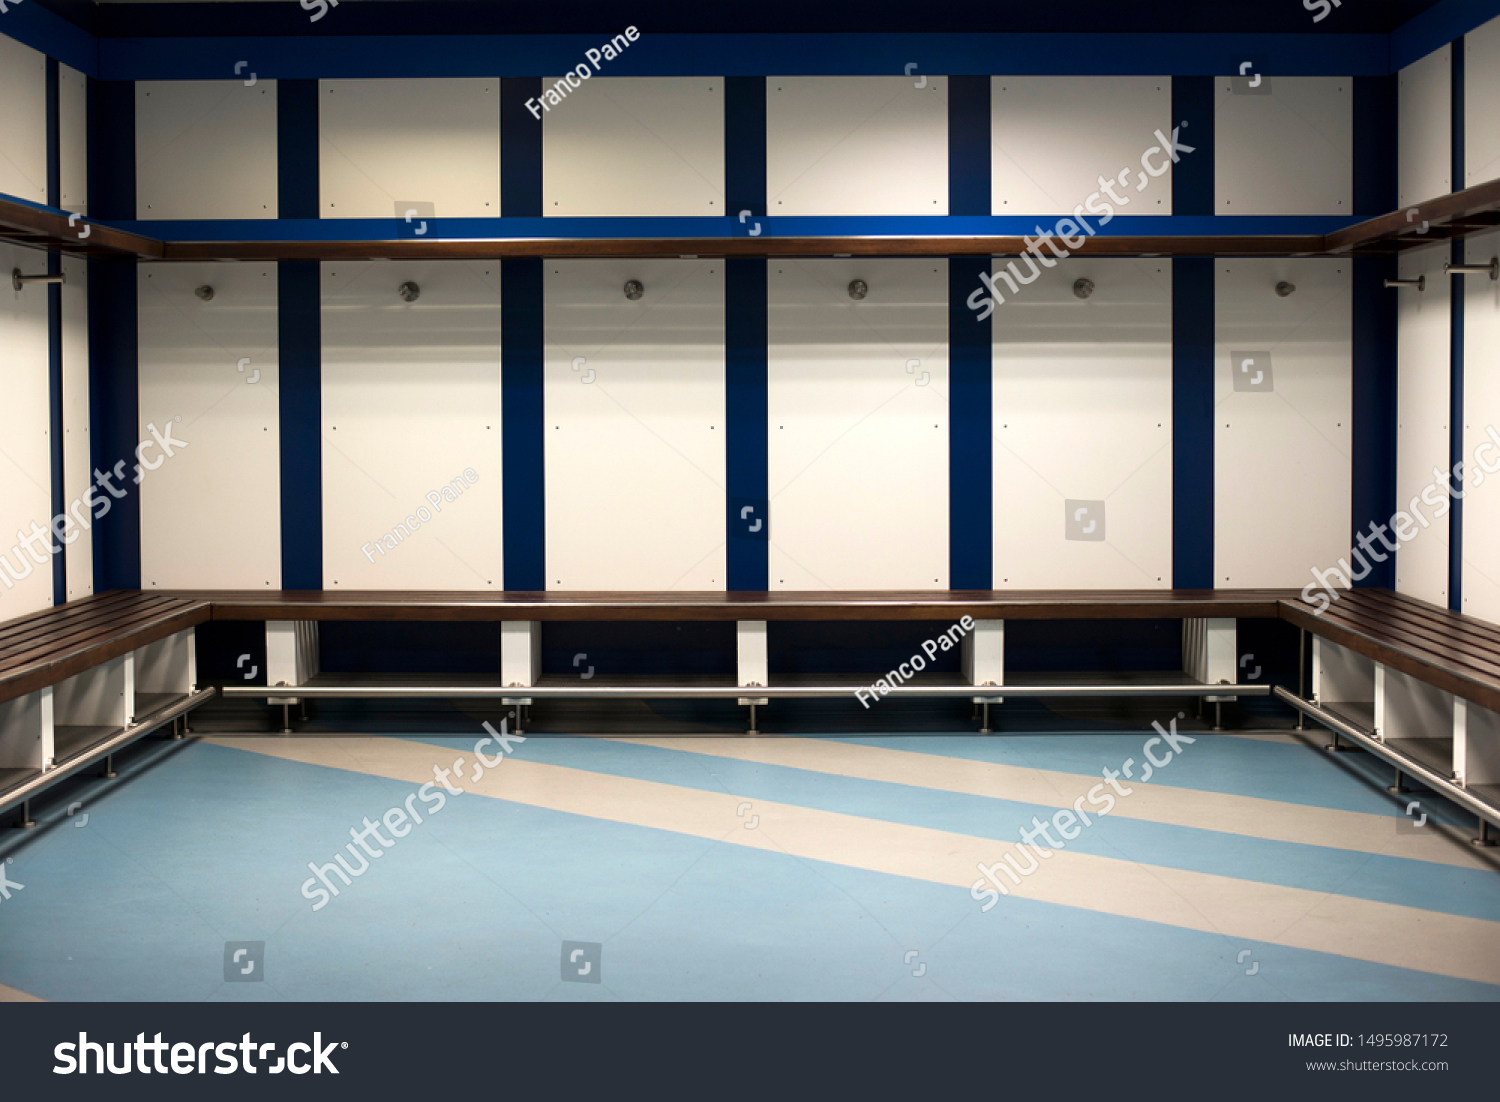 Football soccer locker room sports indoors #1495987172